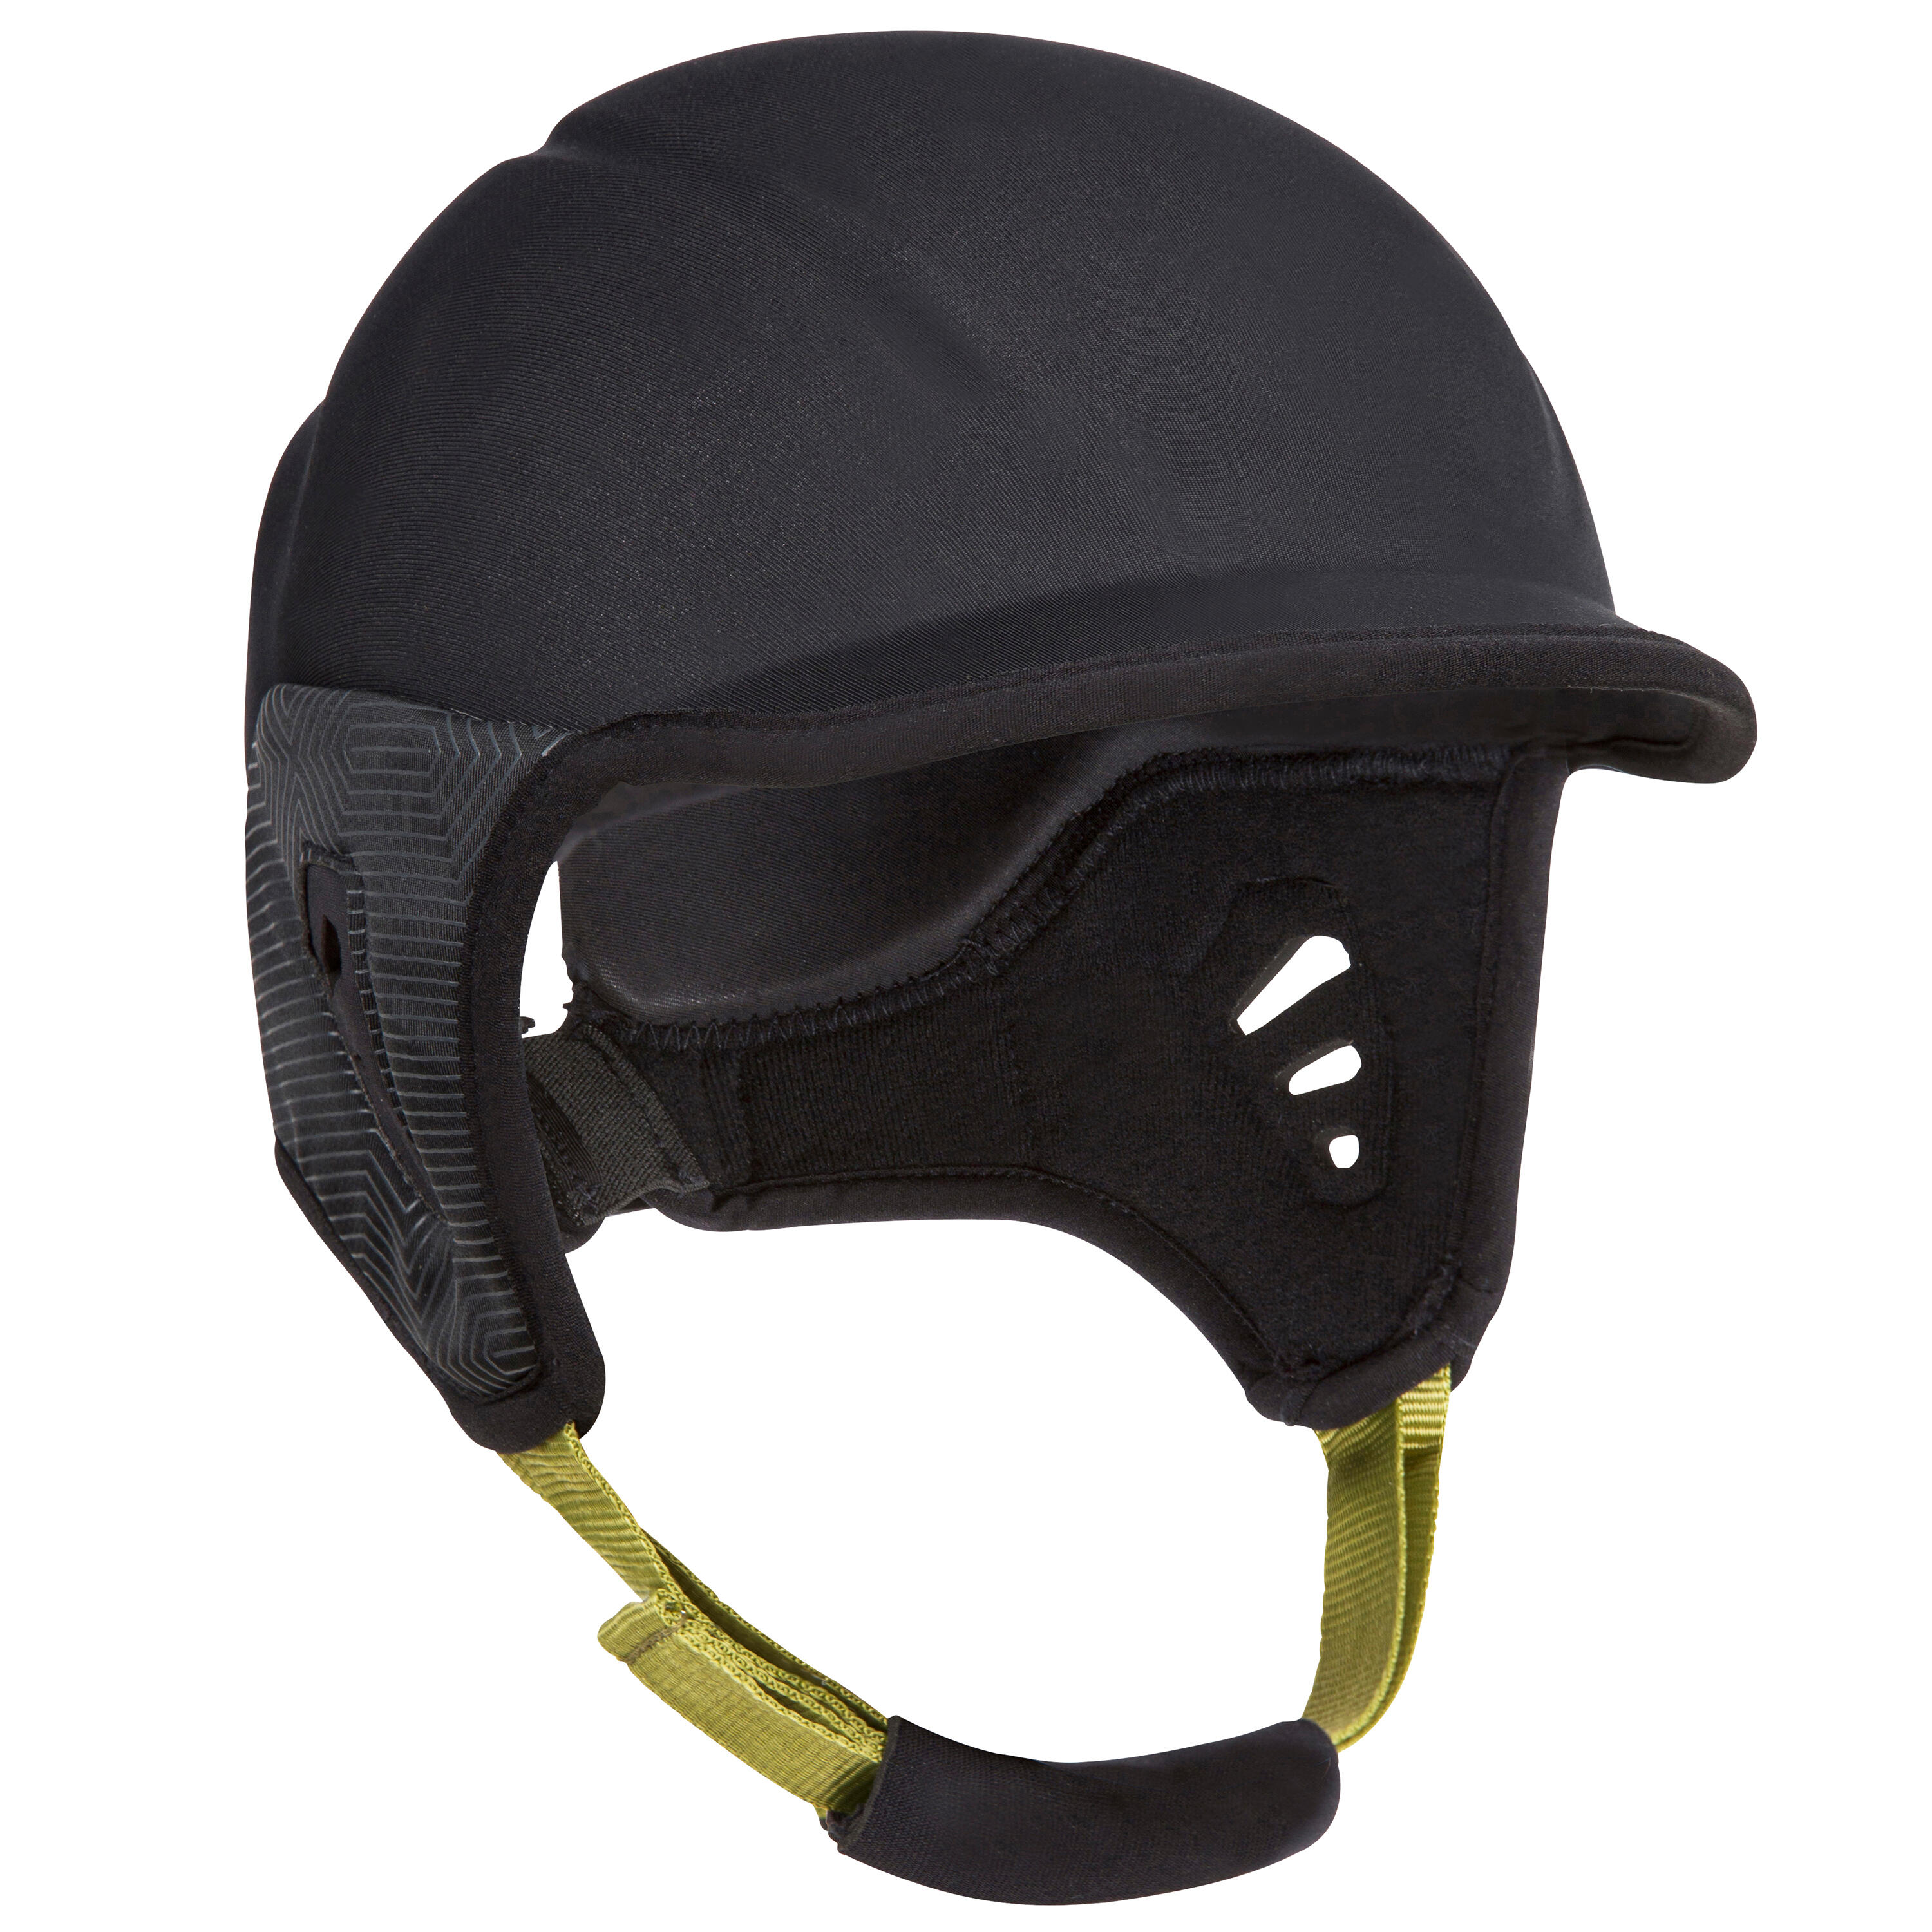 Helmet for surfing. black 3/9